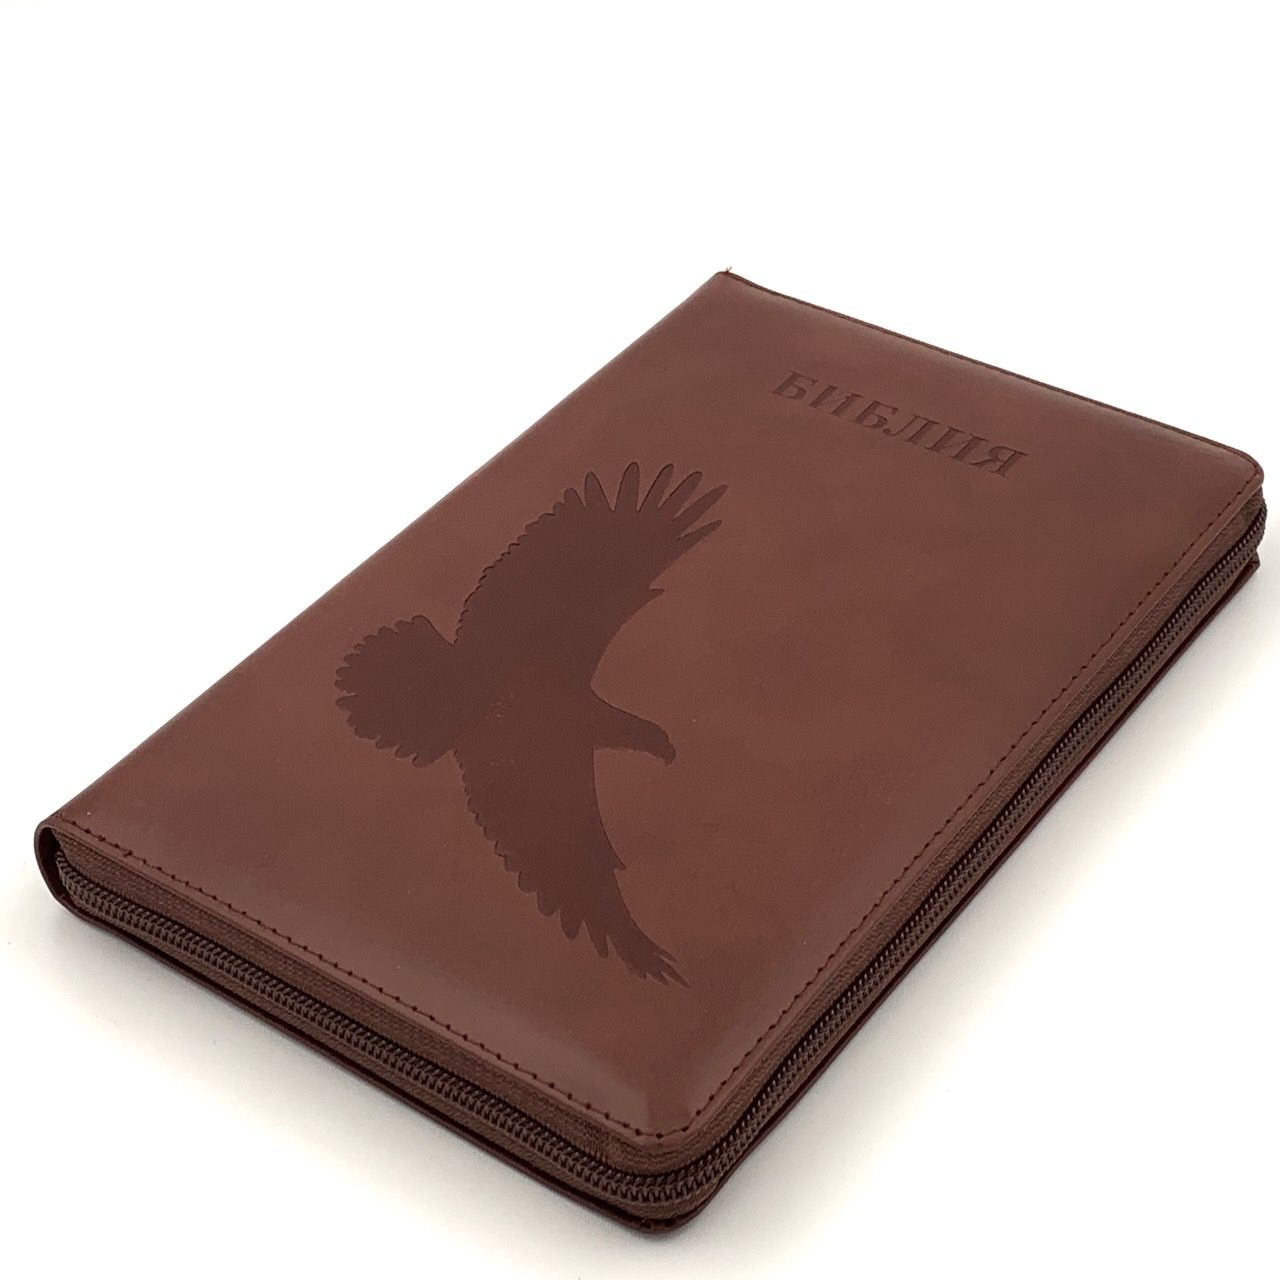 Библия 055zti код E2 дизайн "орел" термо печать, кожаный переплет на молнии с индексами, цвет коричневый, средний формат, 143*220 мм